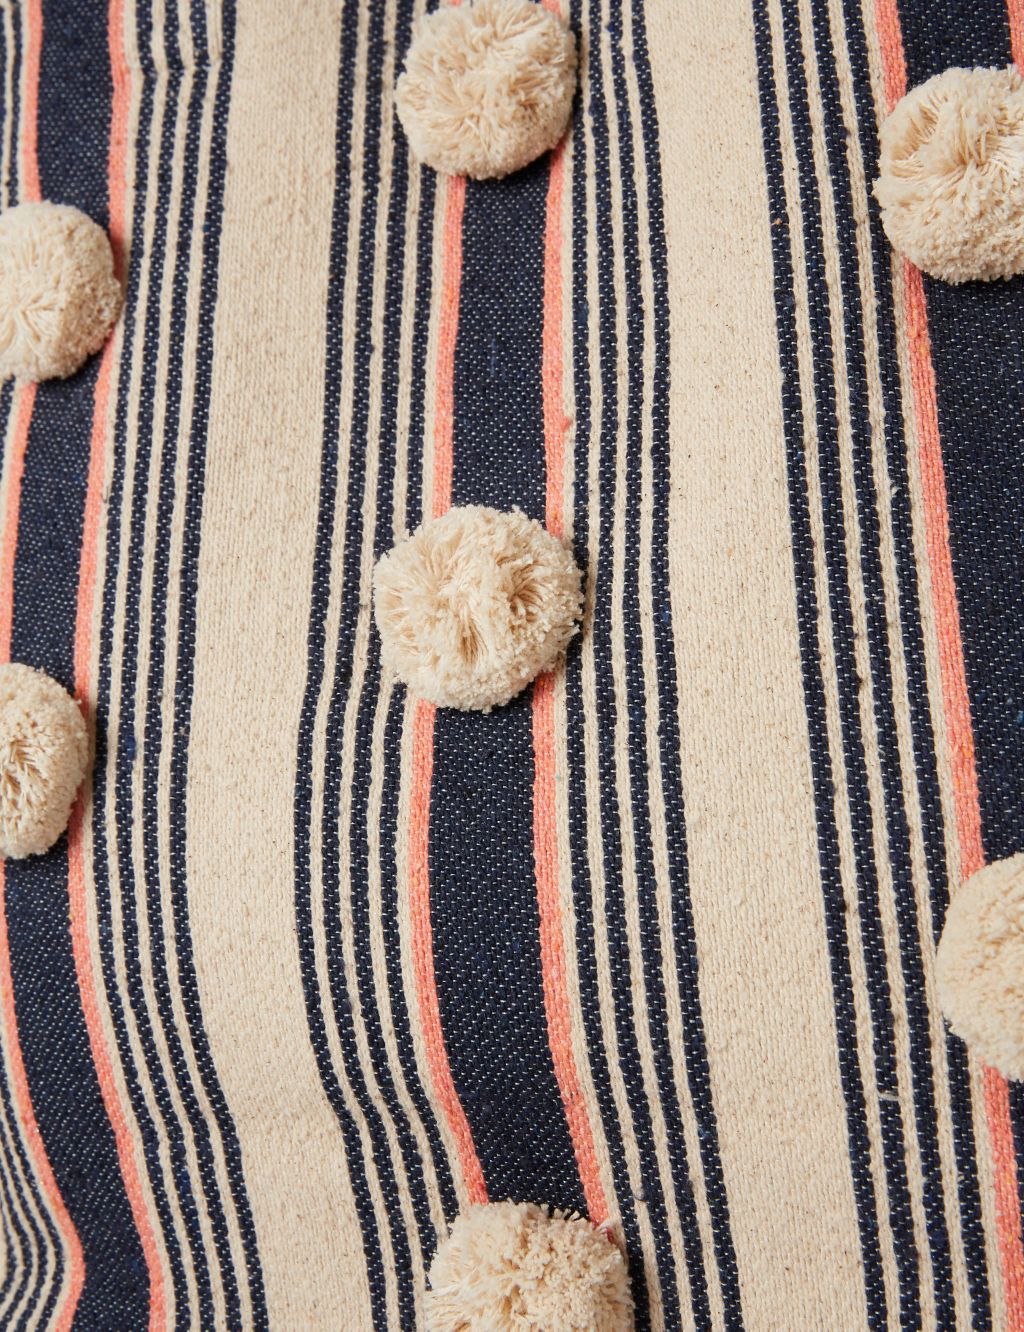 Cotton Blend Striped Embellished Tote Bag image 2